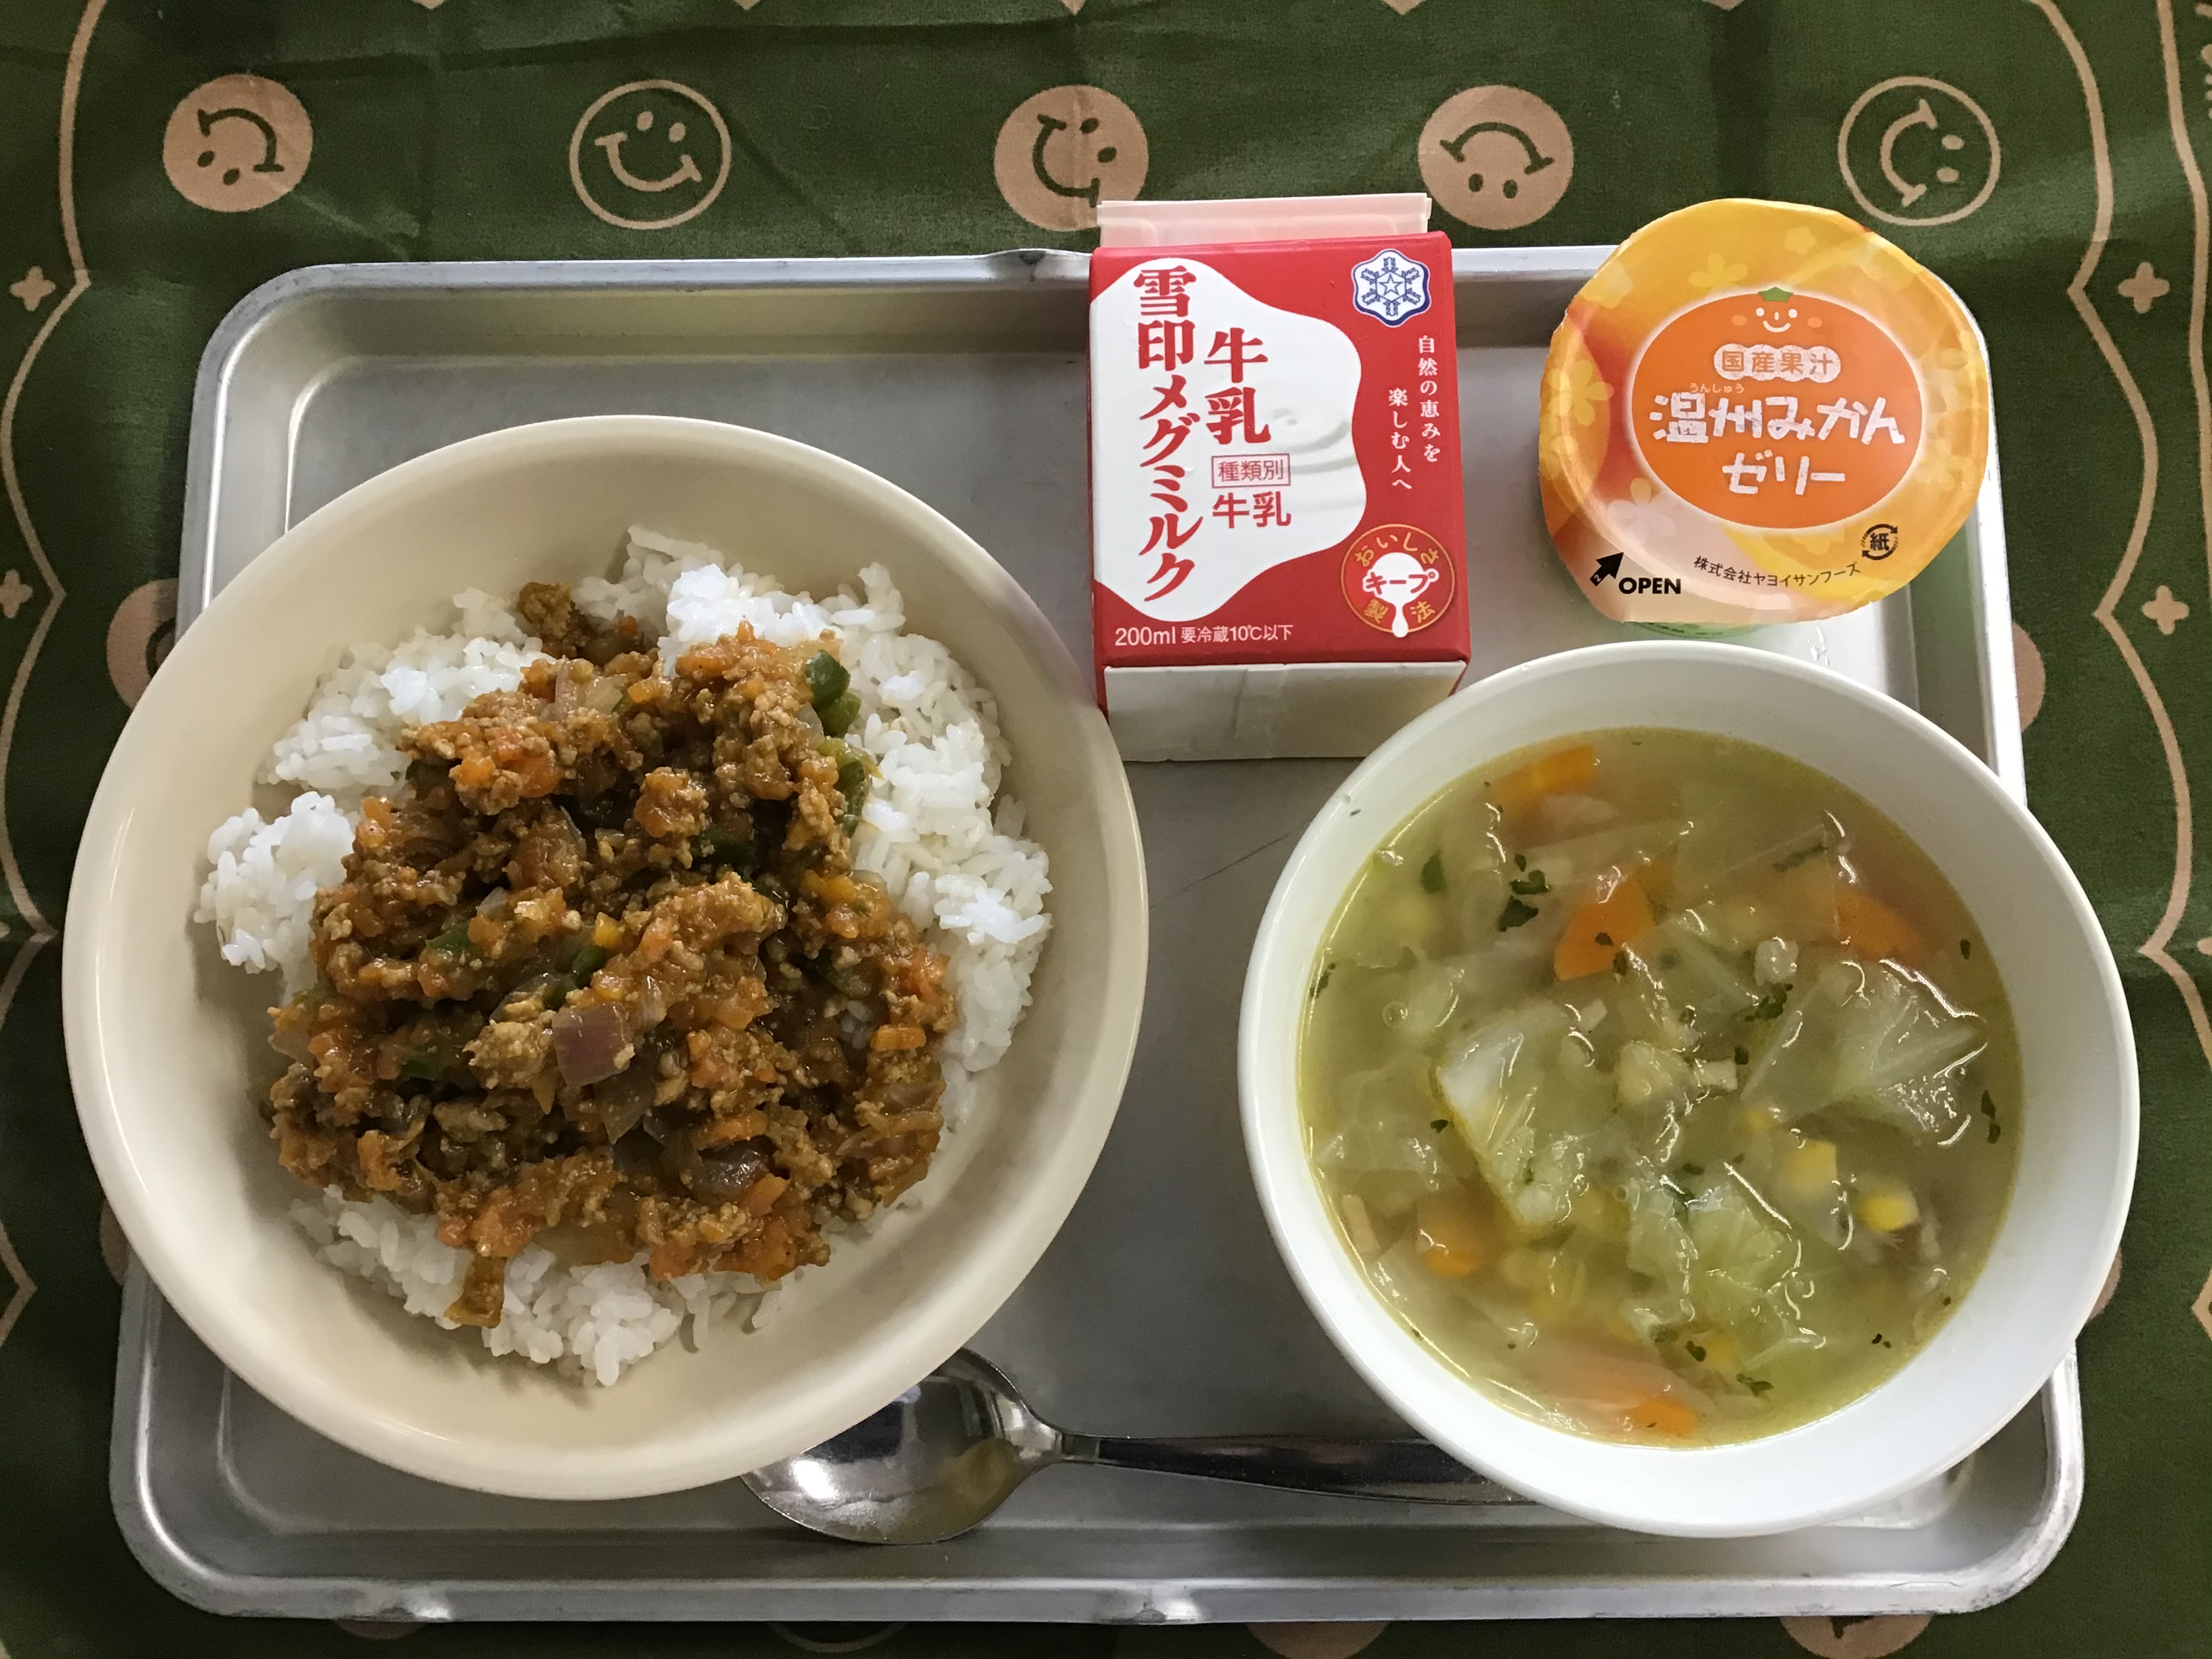 地産地消 神奈川県内の学校給食 湘南レッドのドライカレー ソシオークホールディングス株式会社のプレスリリース